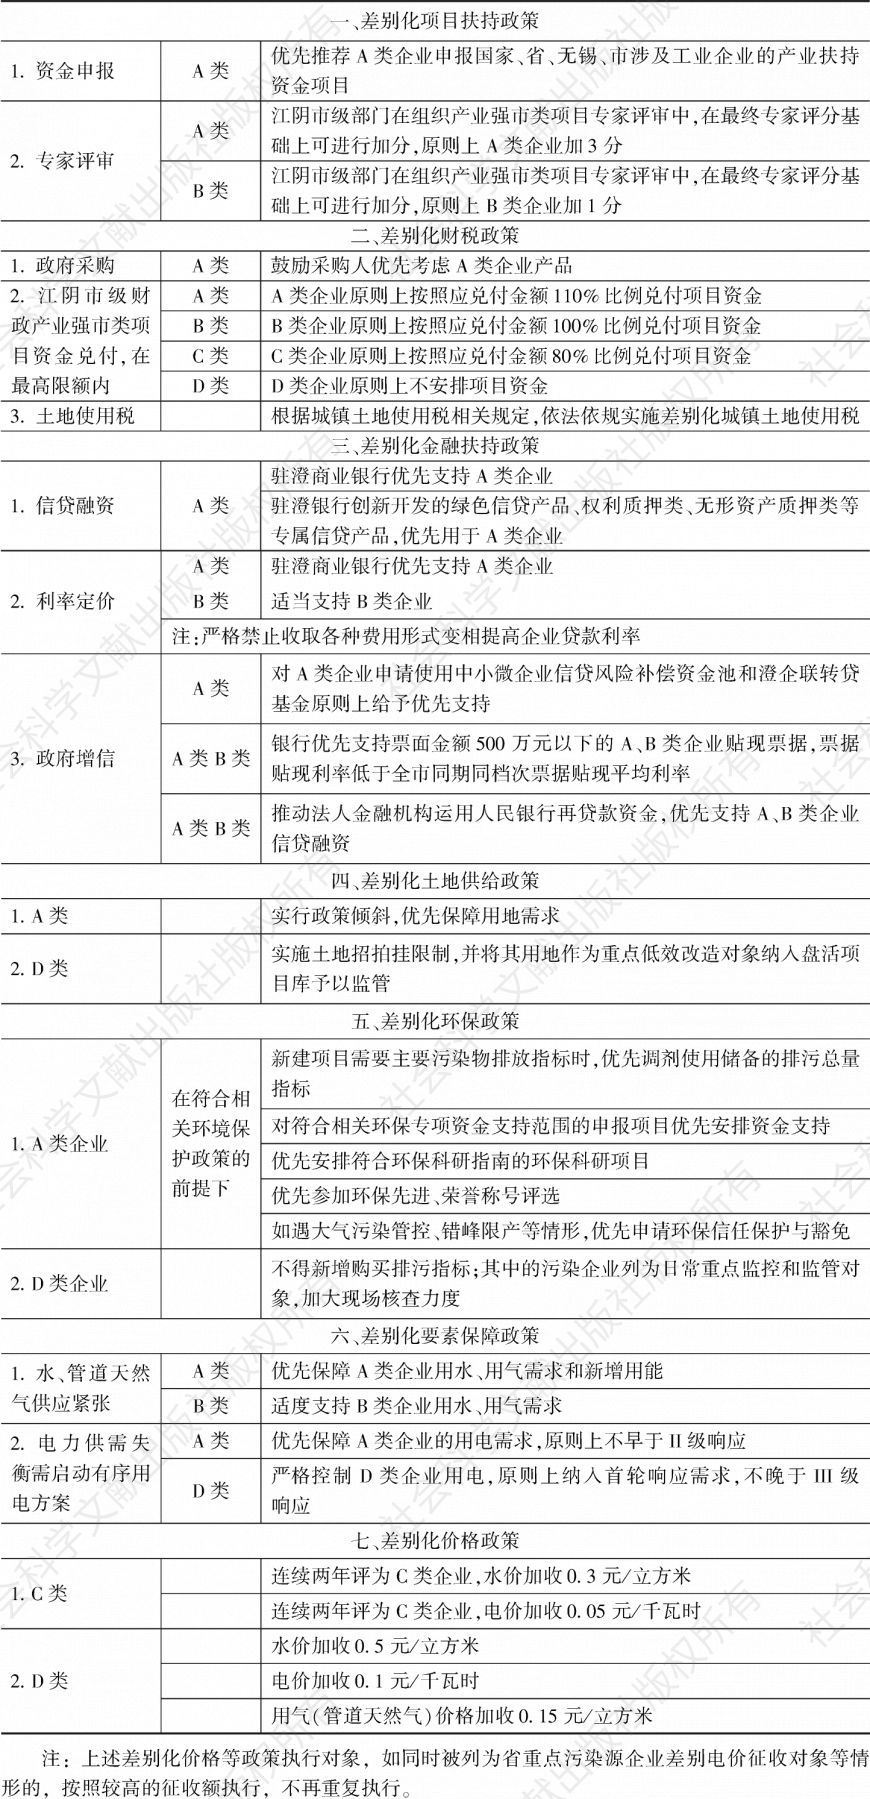 表2 江阴市工业企业资源要素差别化配置政策